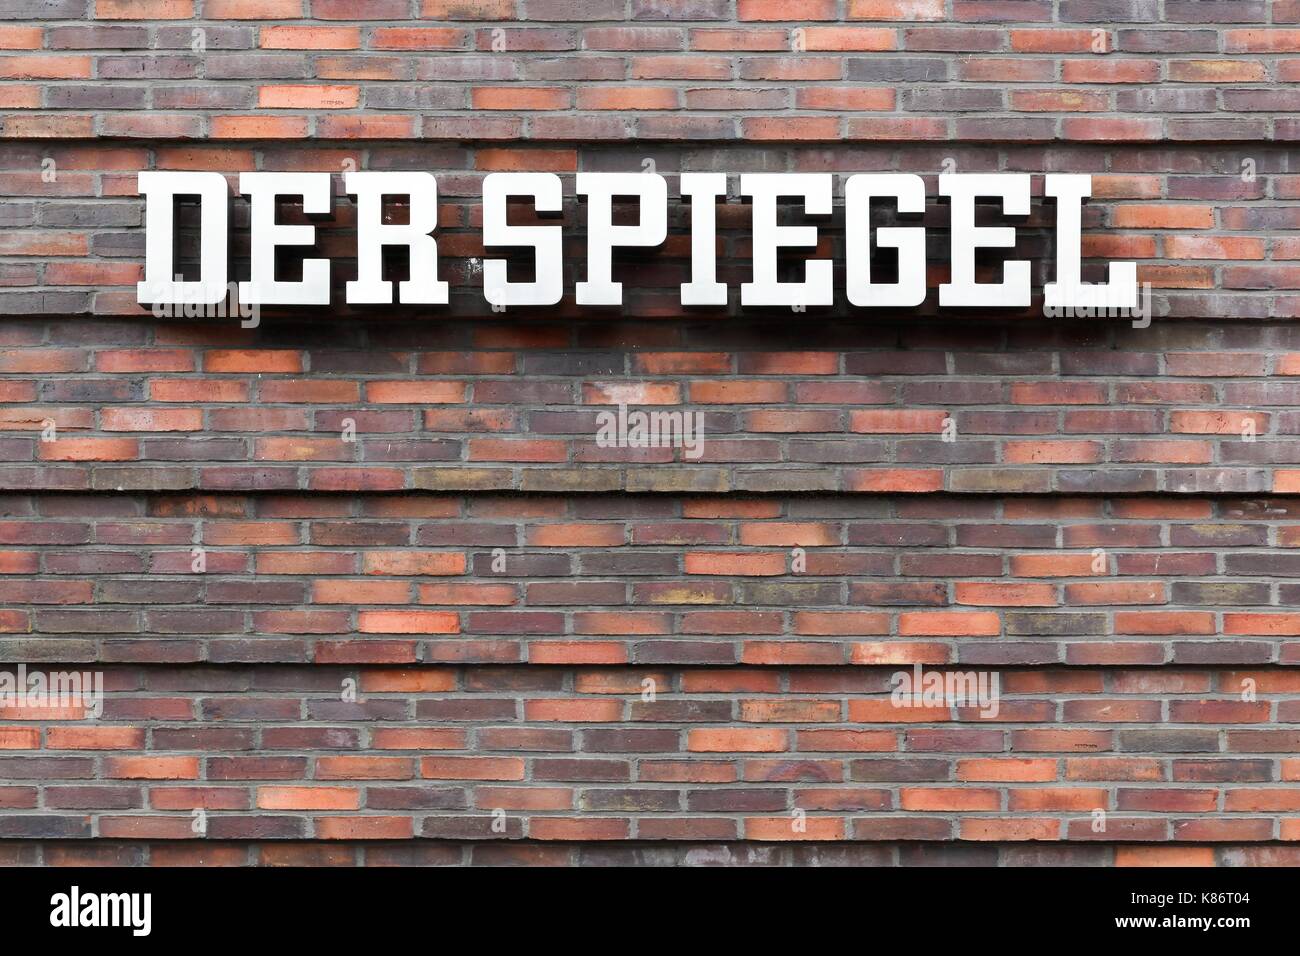 Hamburgo, Alemania - Julio 20, 2017: Der Spiegel logotipo sobre una pared. Der Spiegel es una revista semanal de noticias alemán en Hamburgo, Alemania. Foto de stock